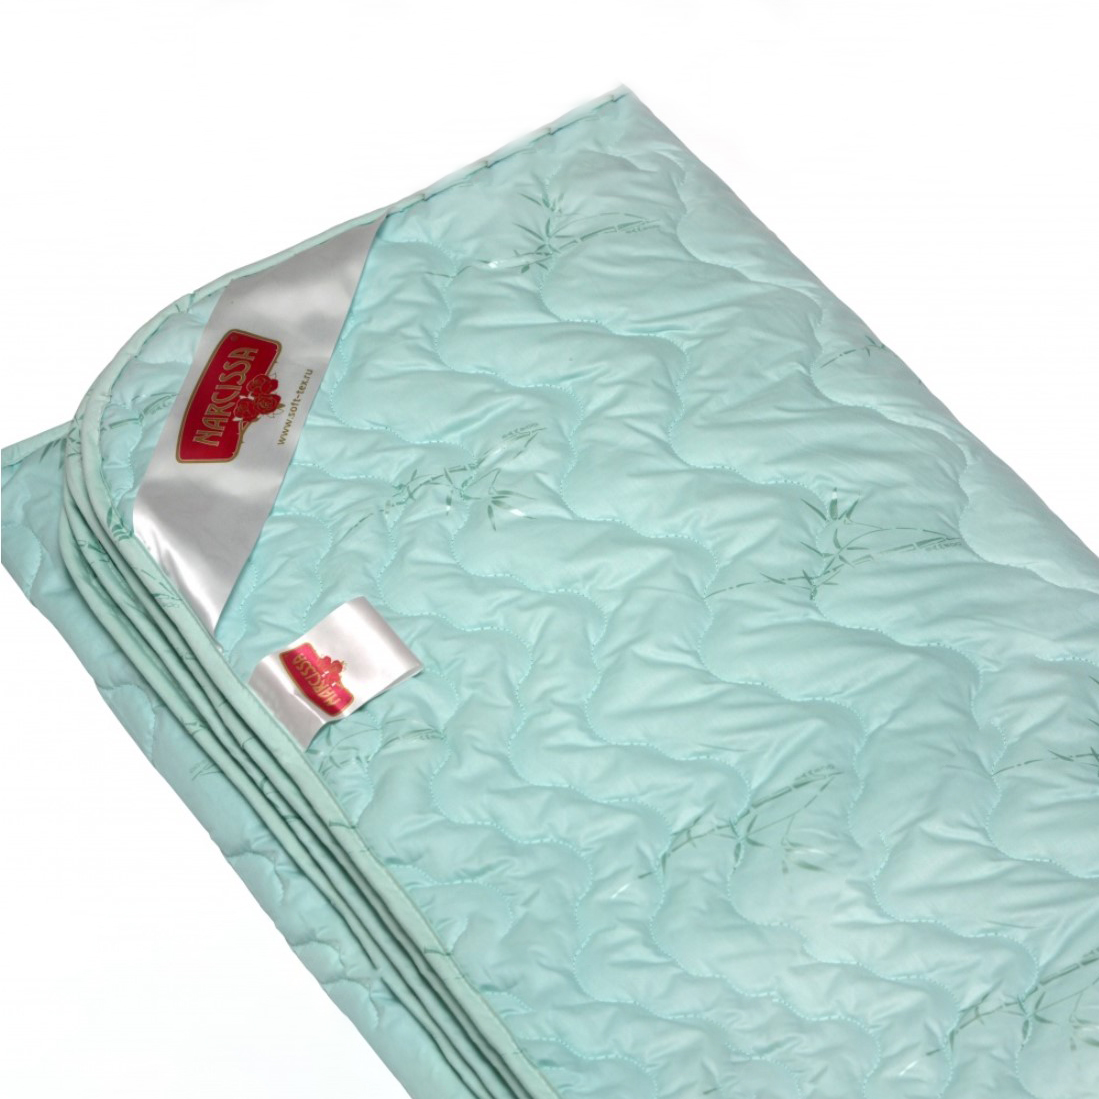 Одеяло Sybil (200х220 см), размер 200х220 см nas708819 Одеяло Sybil (200х220 см) - фото 1